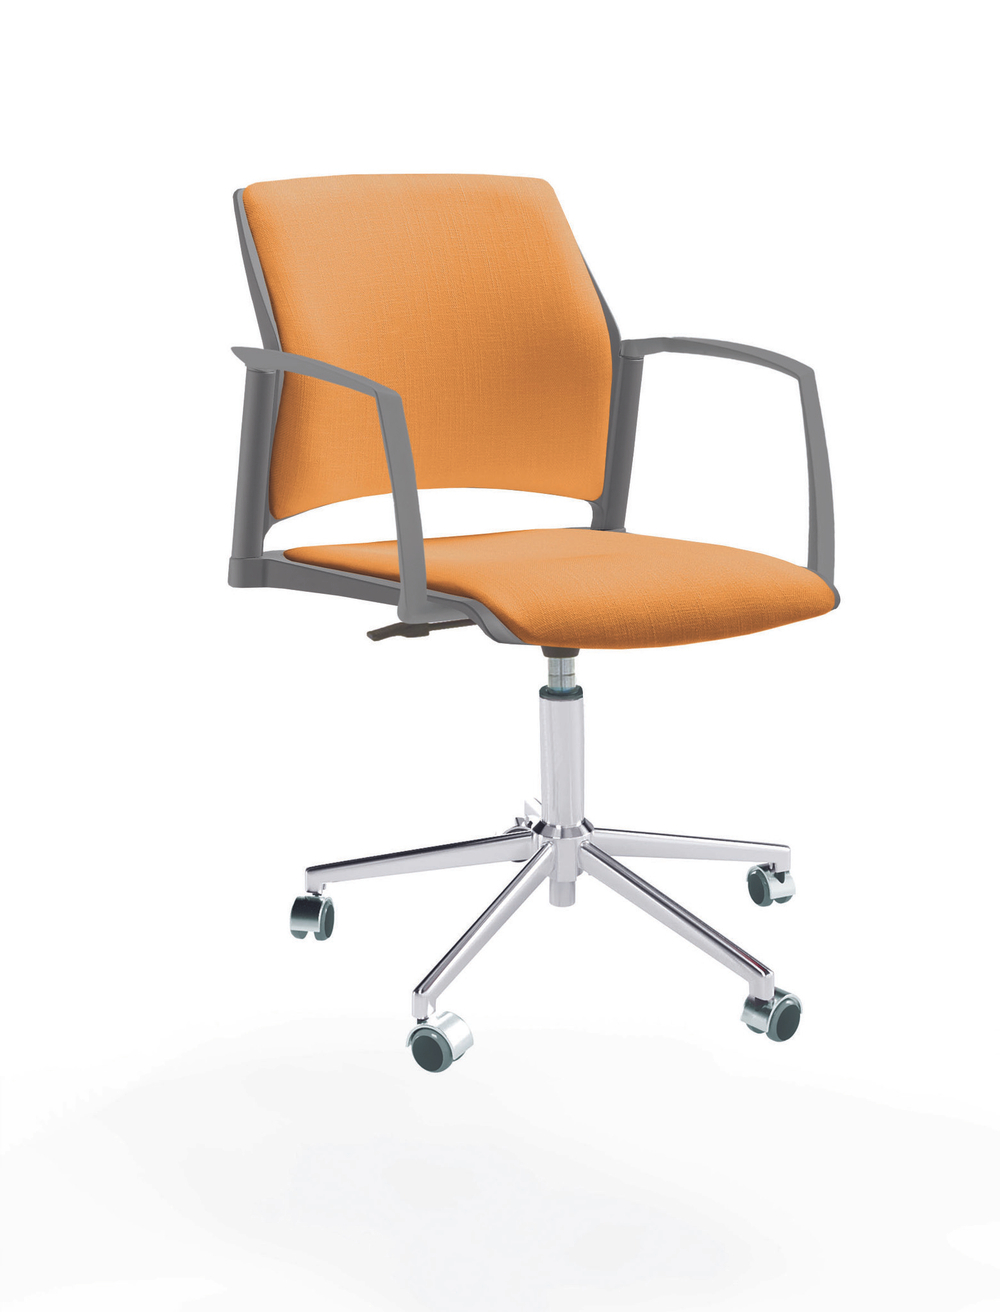 Кресло Rewind каркас хром, пластик серый, база стальная хромированная, с закрытыми подлокотниками, сиденье и спинка оранжевые